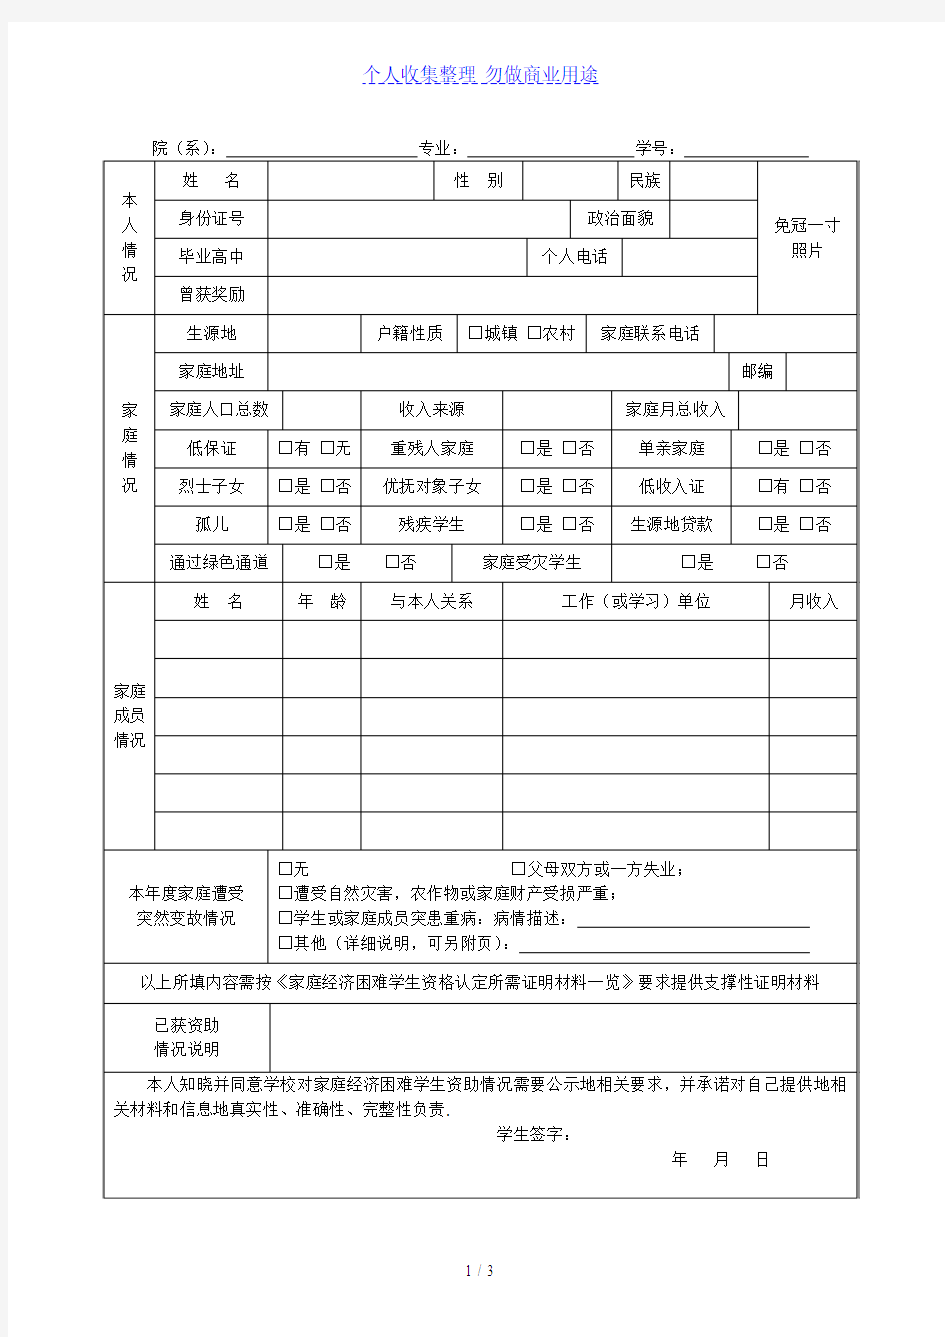 北京第二外国语学院家庭经济困难学生情况调查表